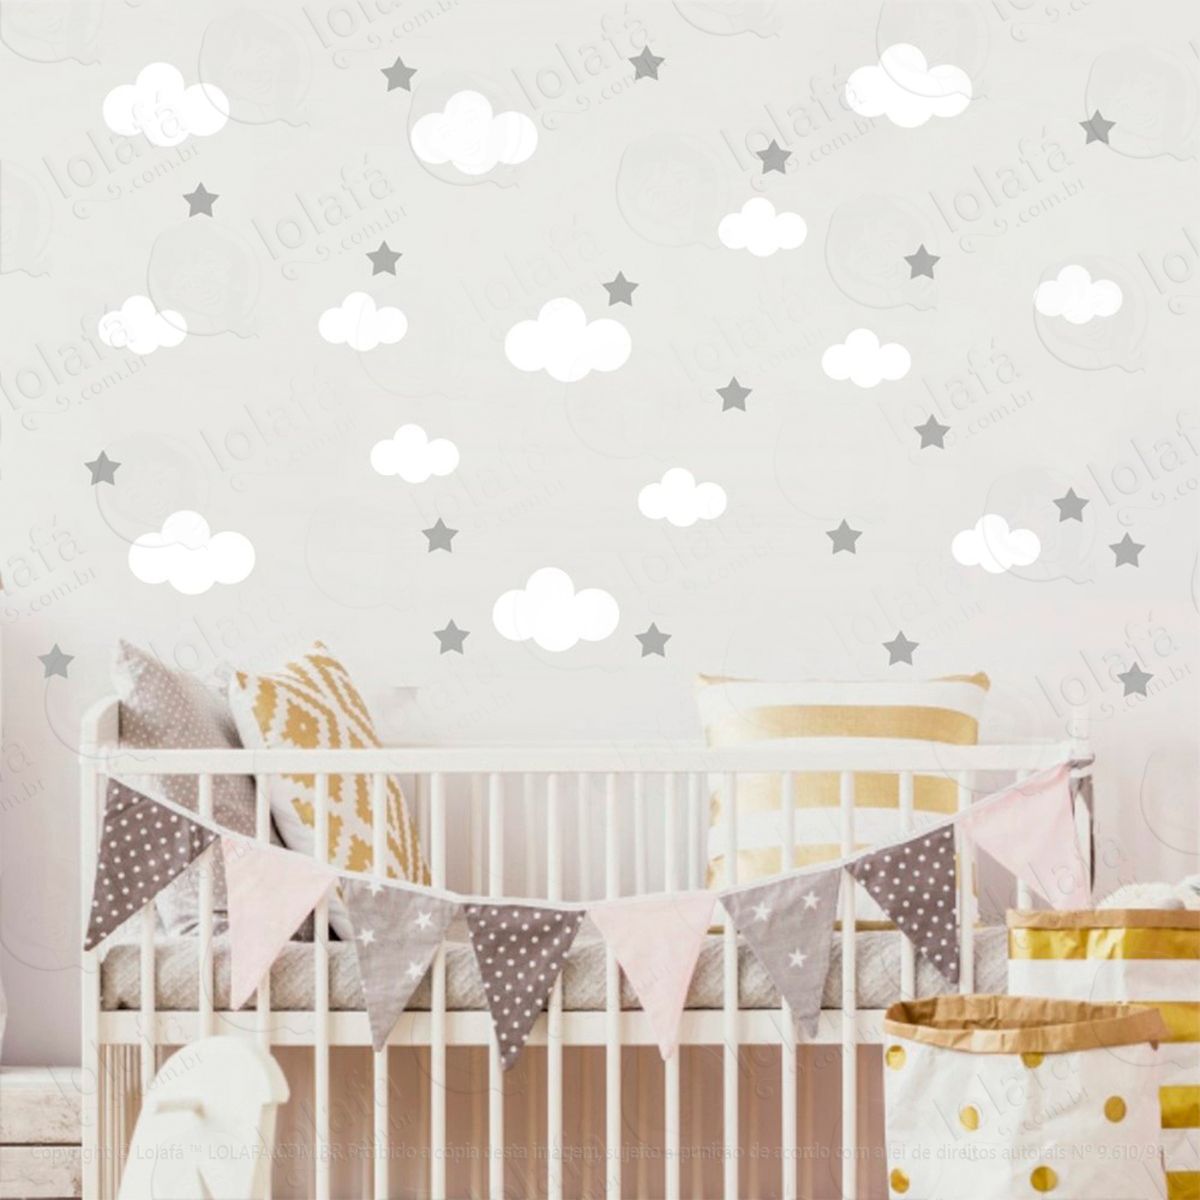 adesivos nuvens e estrelas 104 peças adesivos para quarto de bebê infantil - mod:825